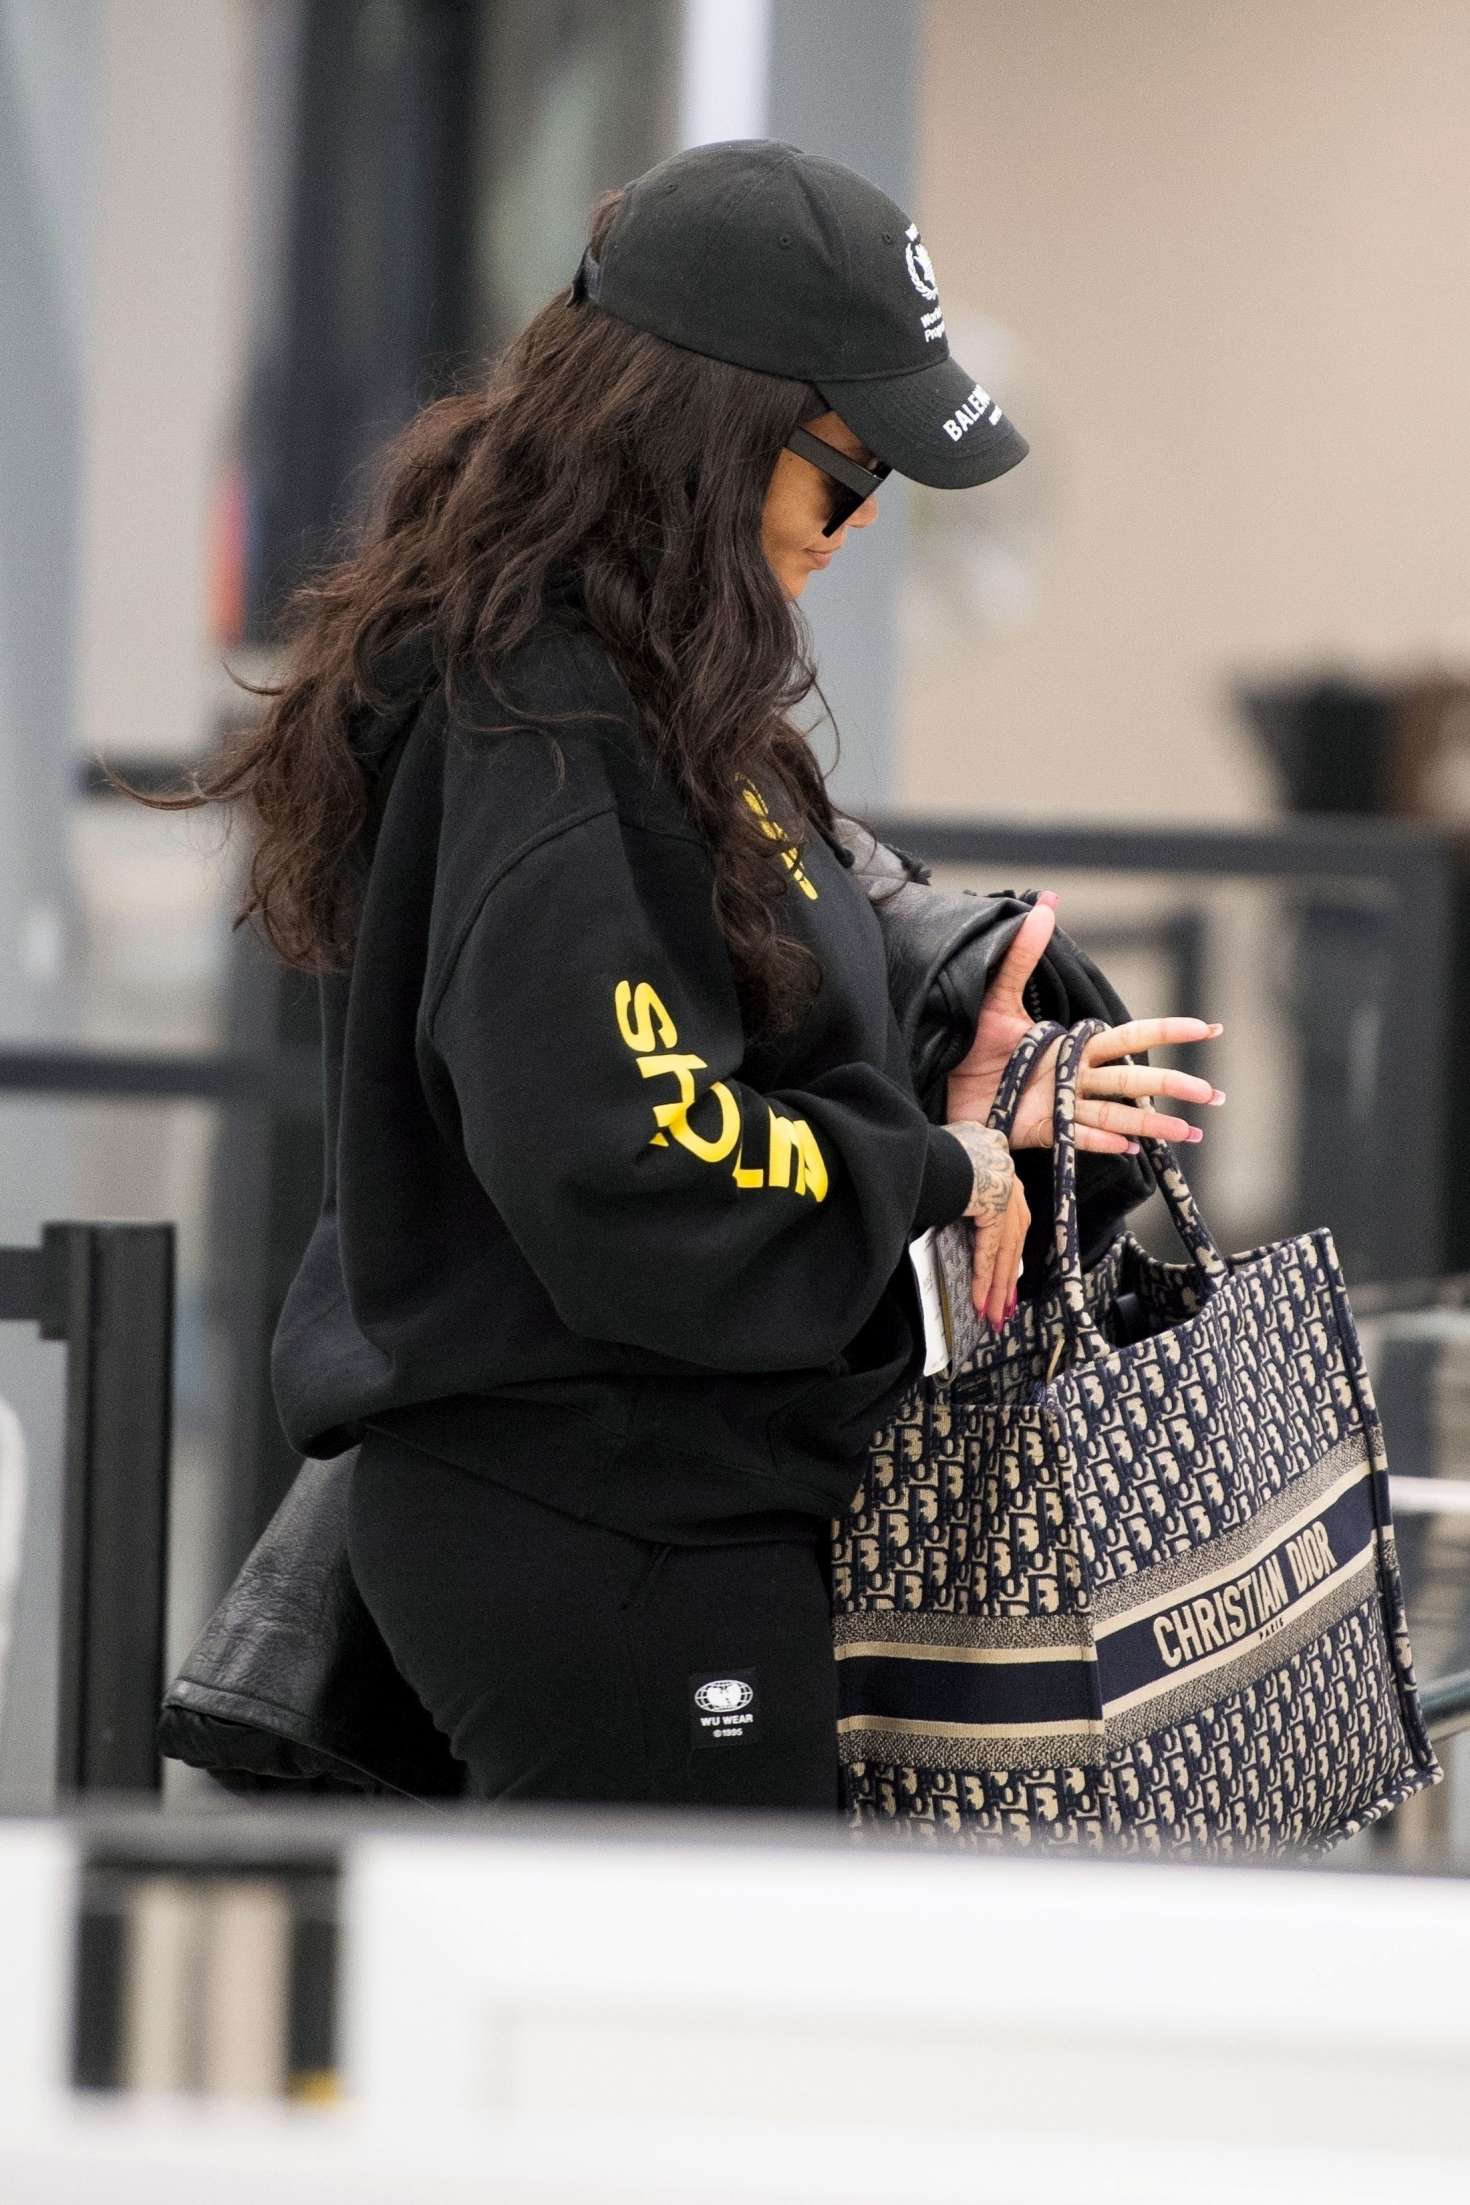 Rihanna at JFK Airport in NYC